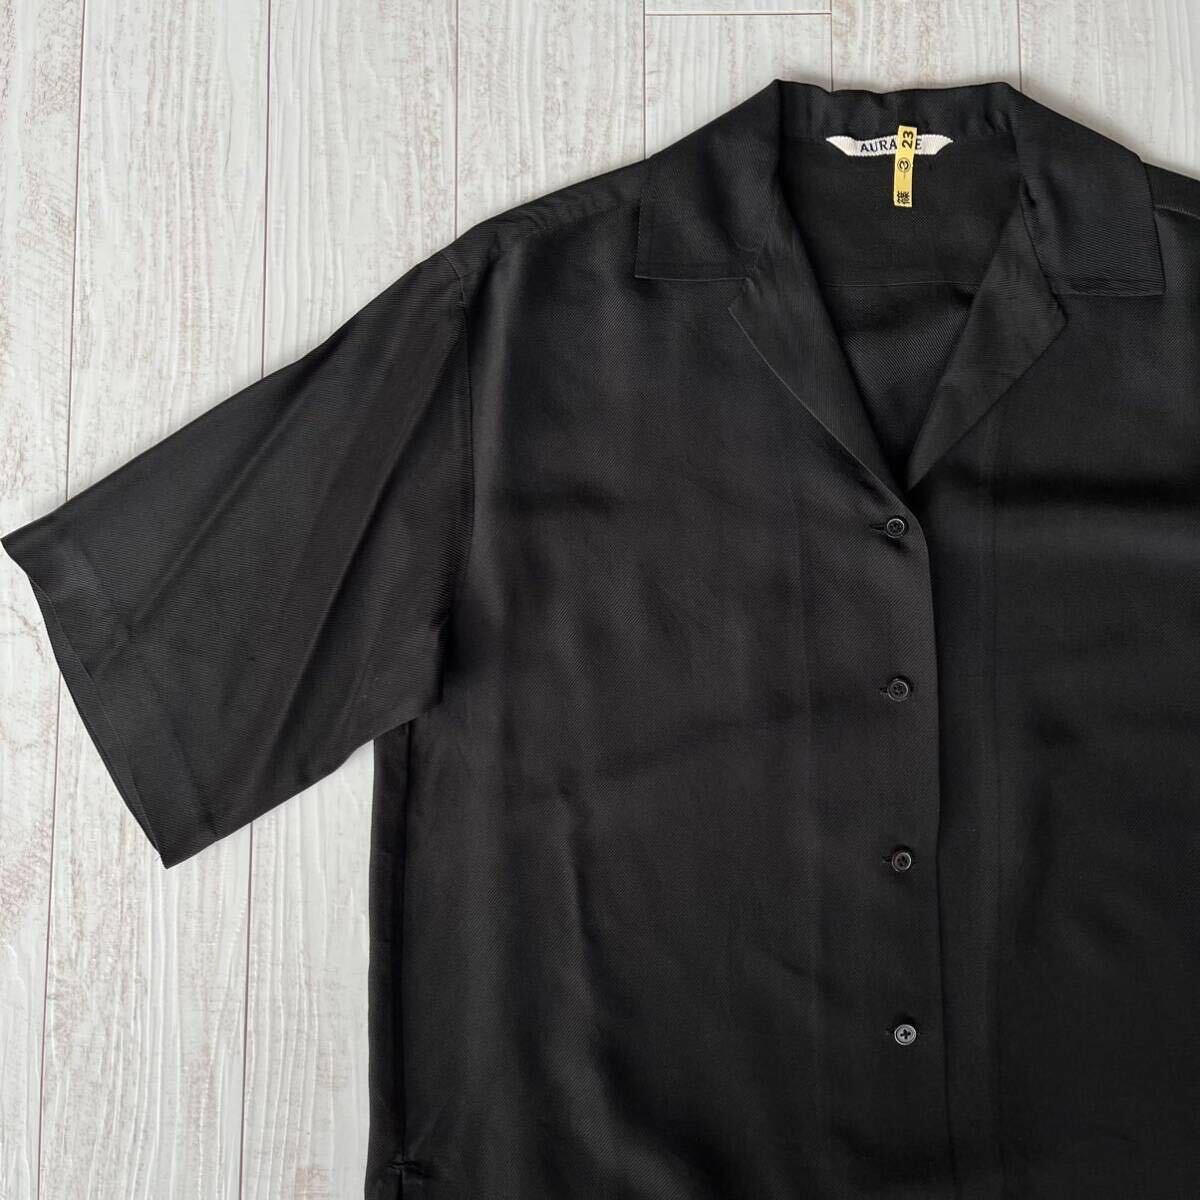  прекрасный товар AURALEEo- Rally шелк шелк рубашка с коротким рукавом открытый цвет рубашка женский 1 стандартный товар сделано в Японии чёрный черный M размер 